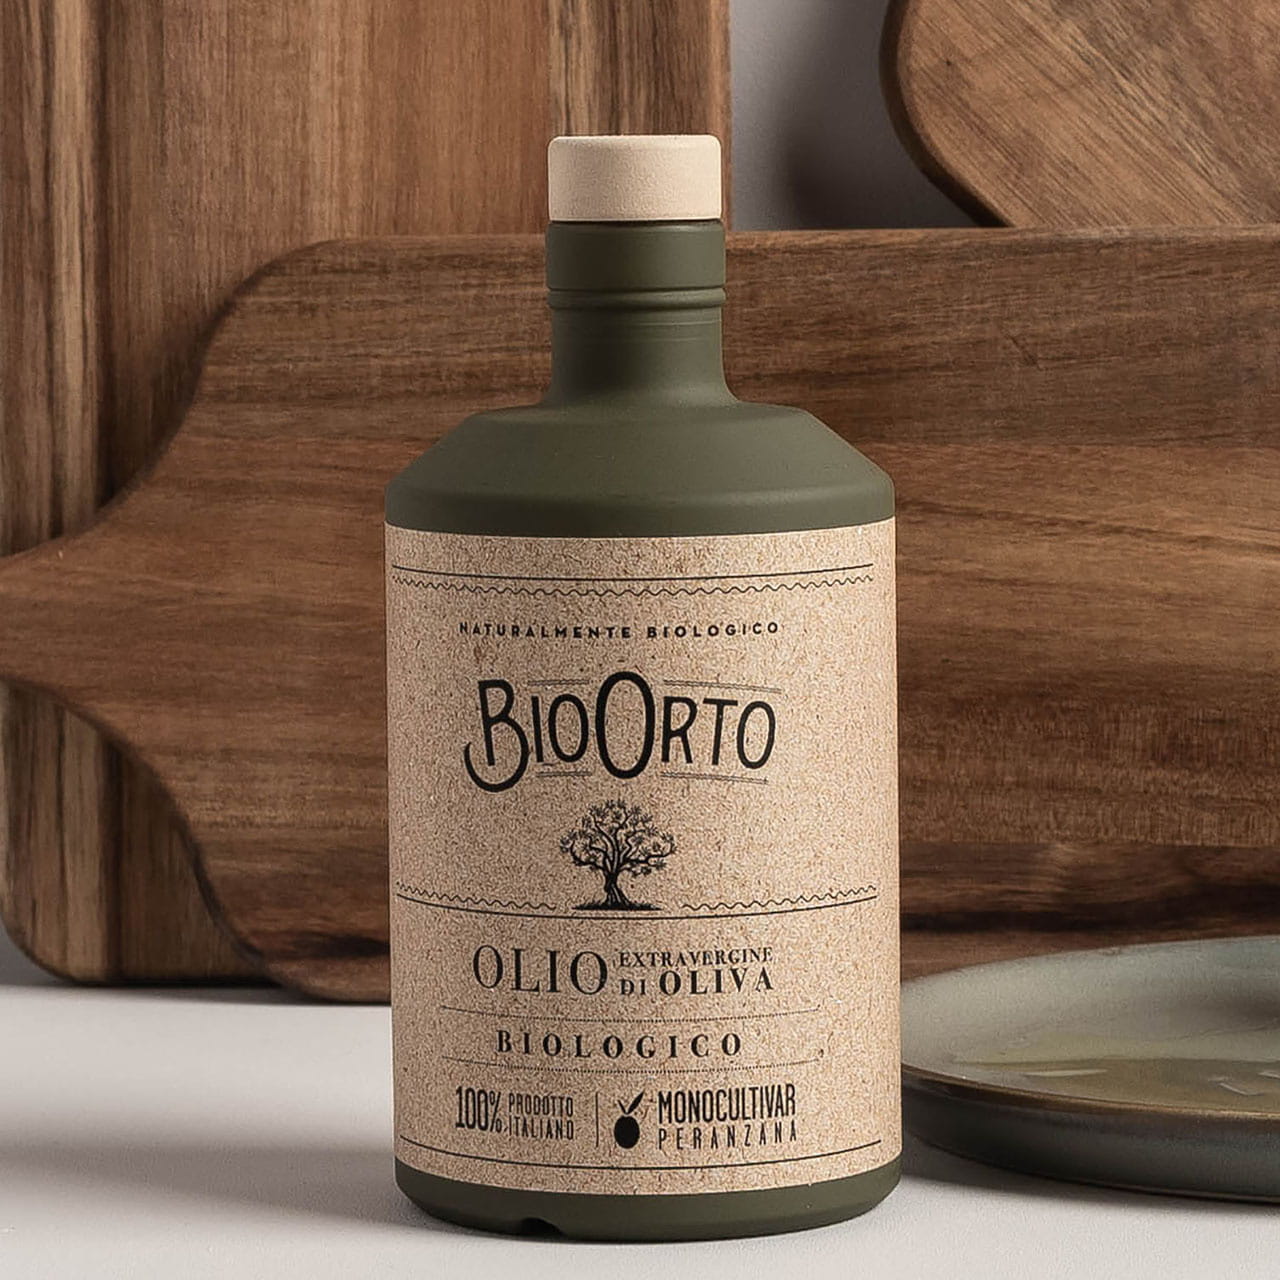 Włoska oliwa Bio Orto Peranzana 0,5l prezent dla smakosza